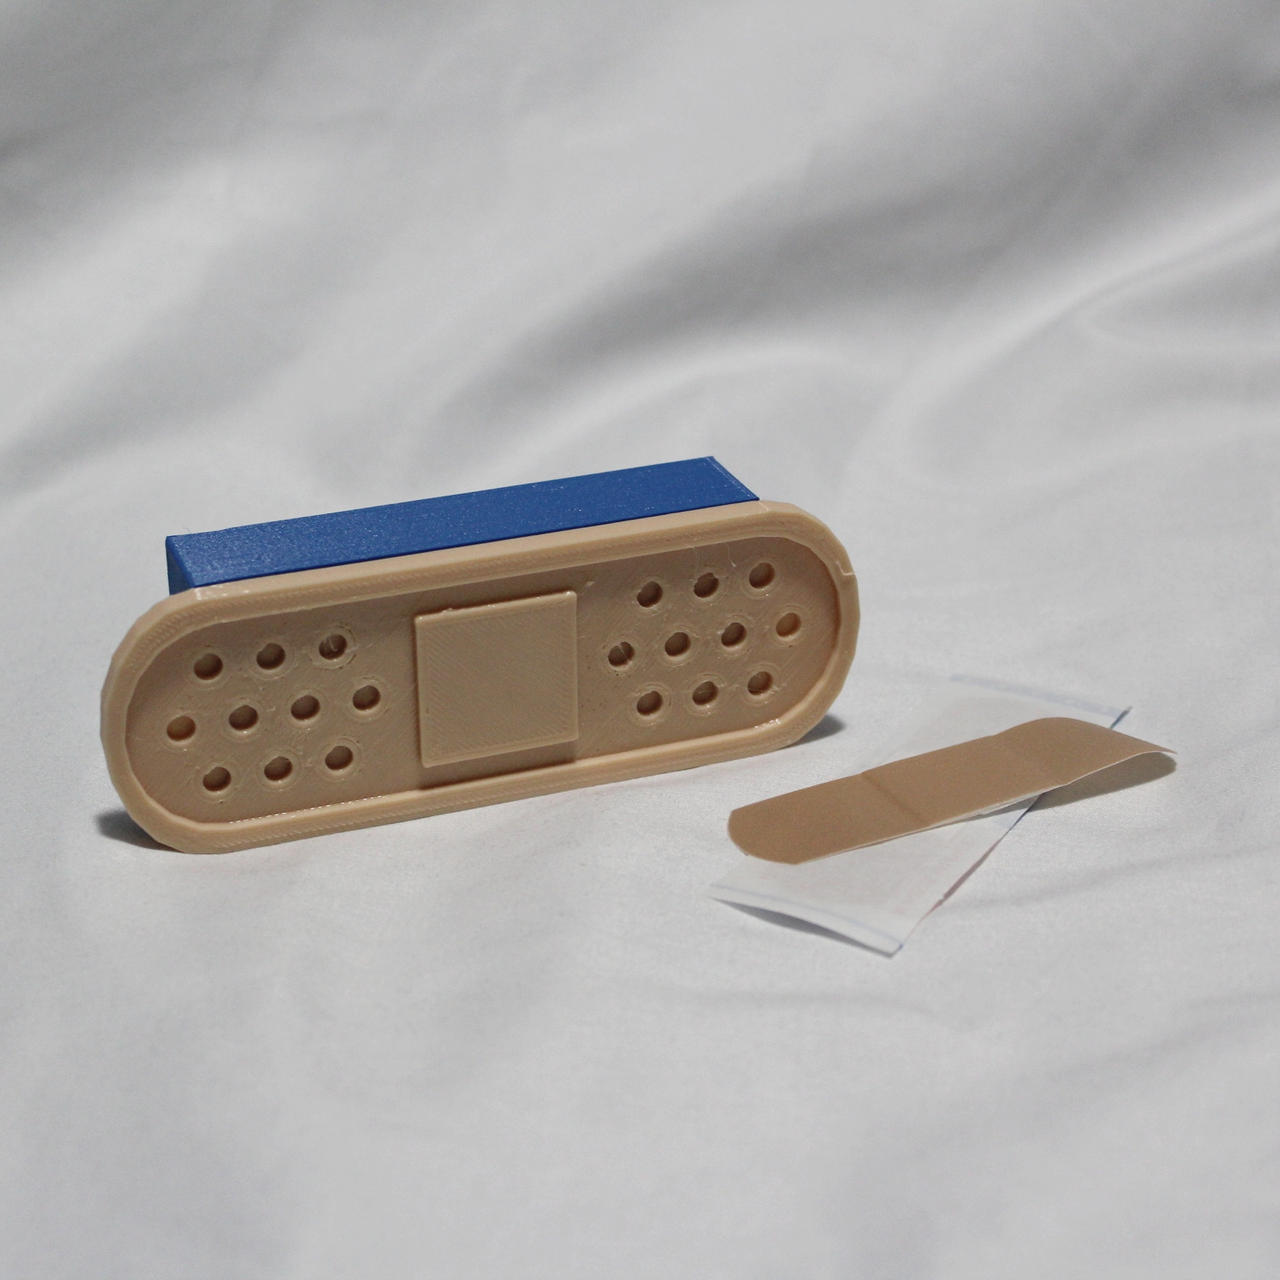 Band-Aid Storage Box by s0urceduty on DeviantArt